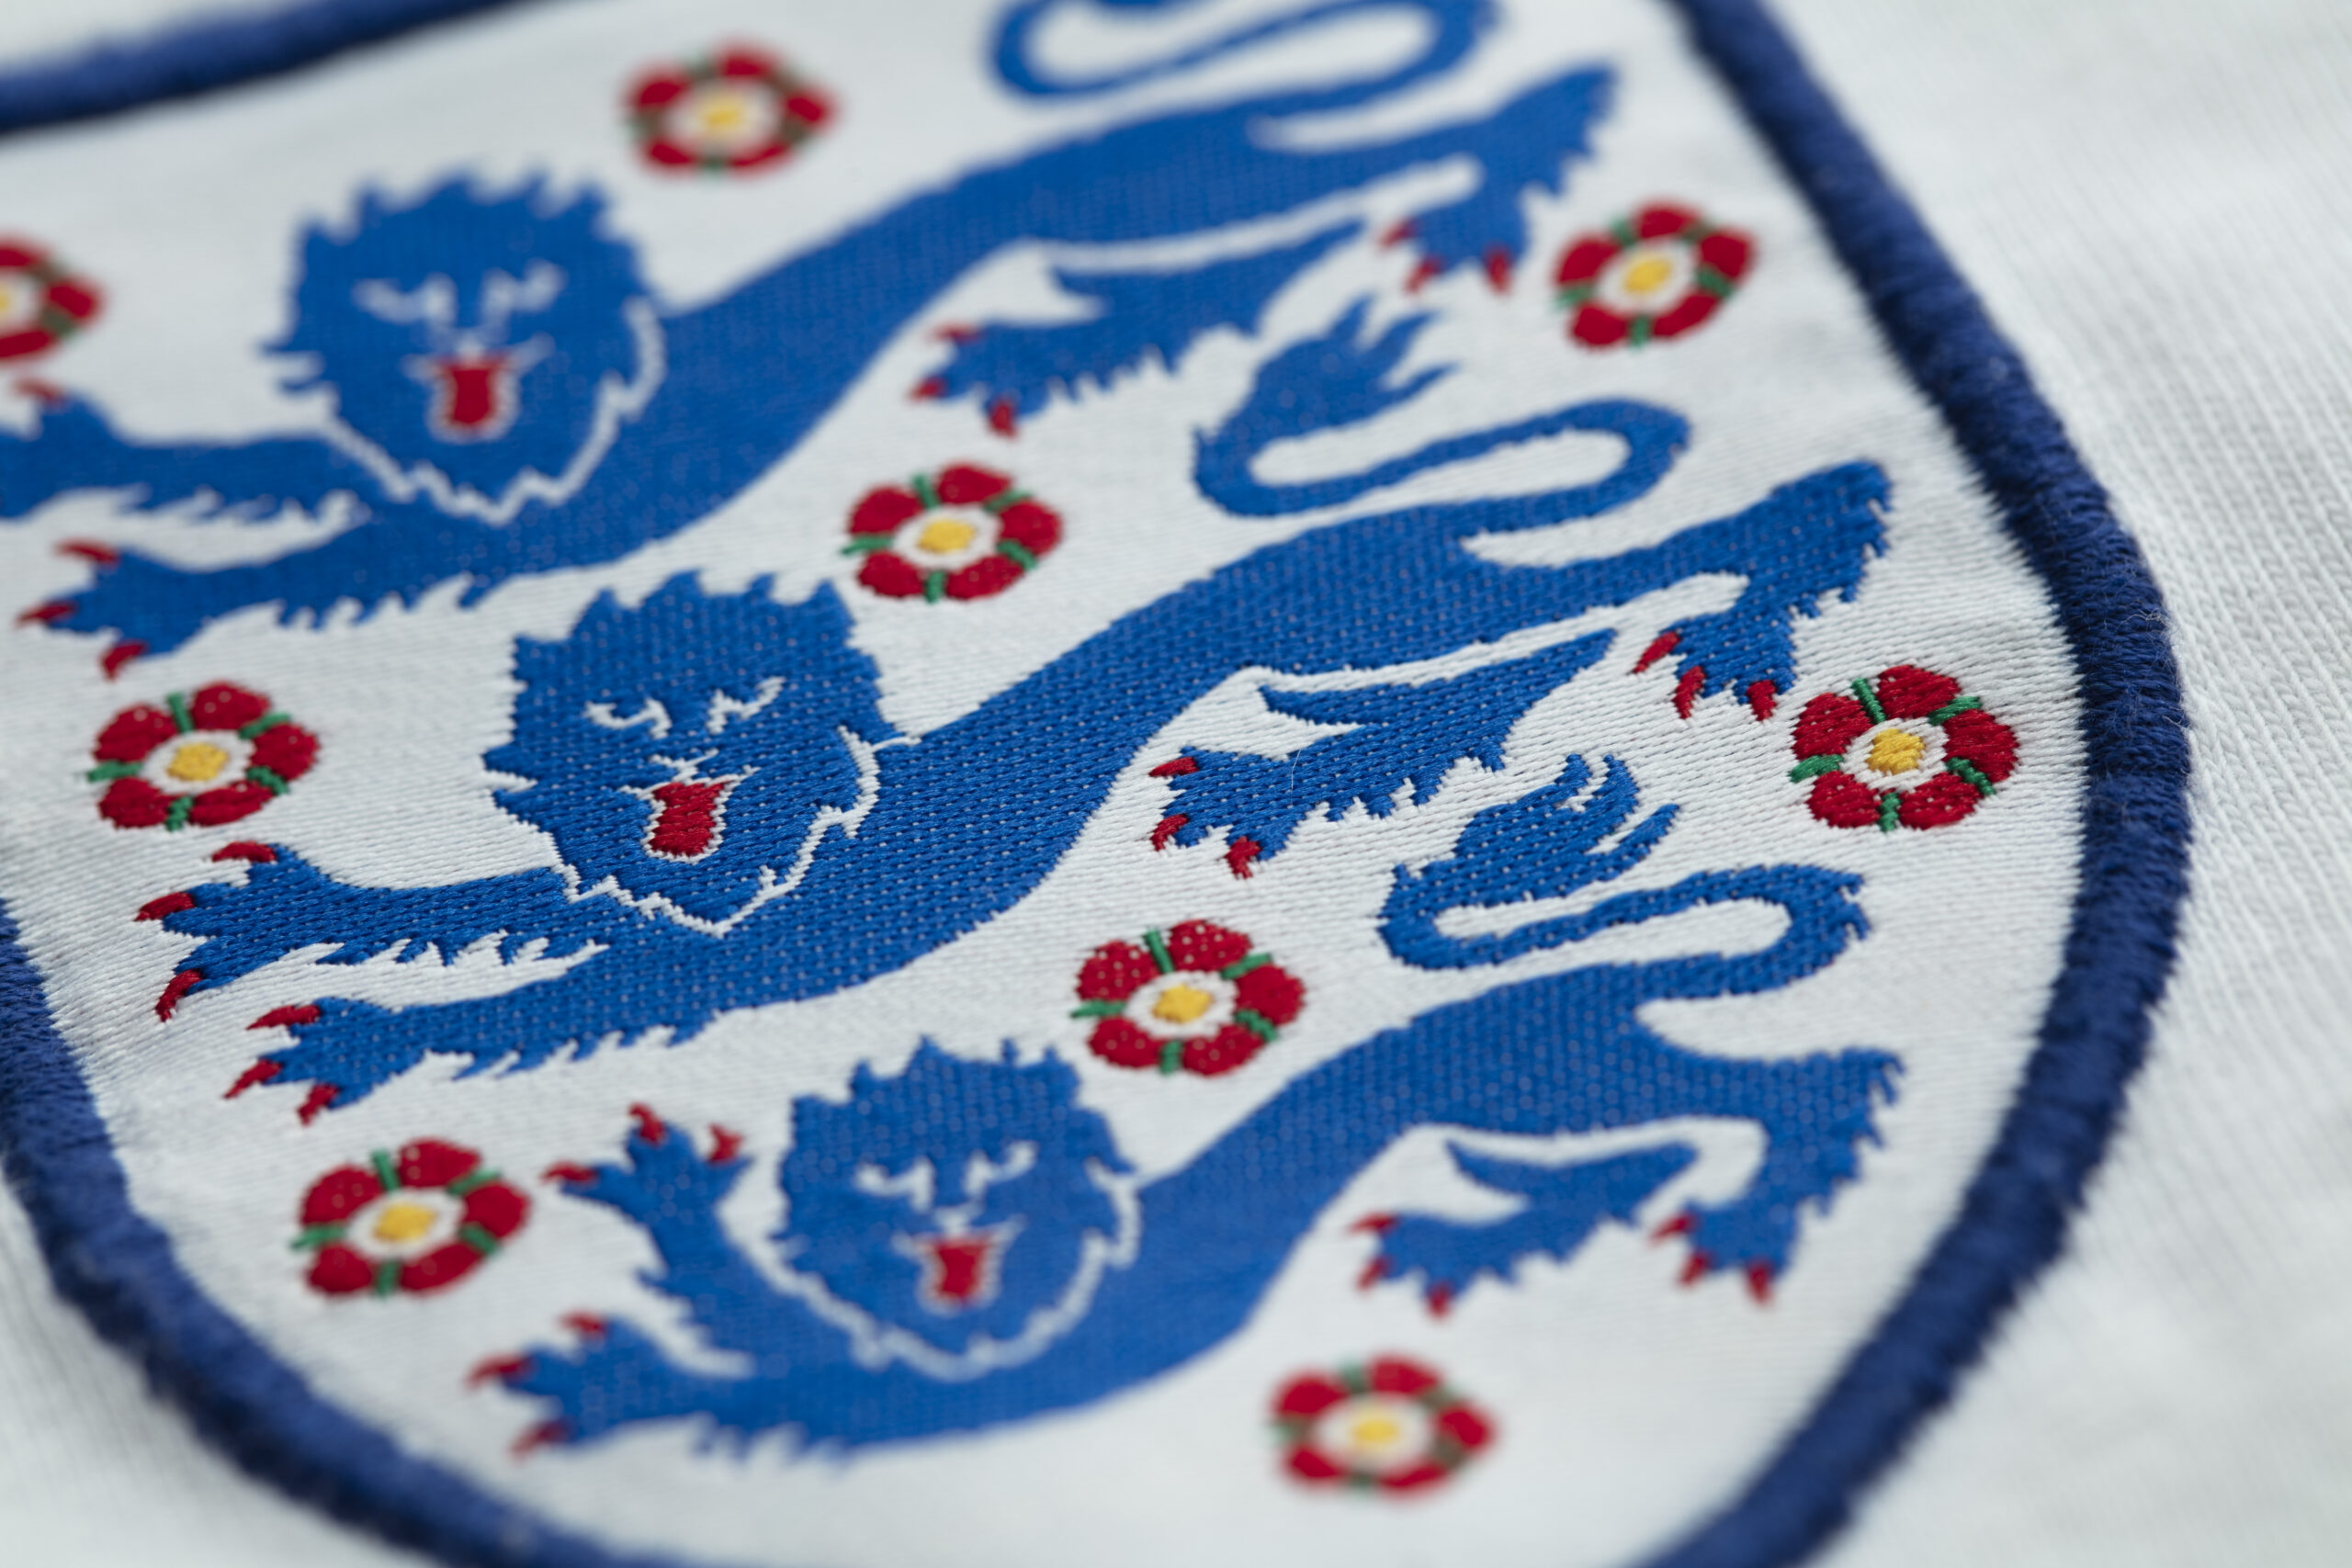 IMAGO Image ID: 0355646912 - LONDON, UK - August 2022: Three lions national emblem badge on England kits.